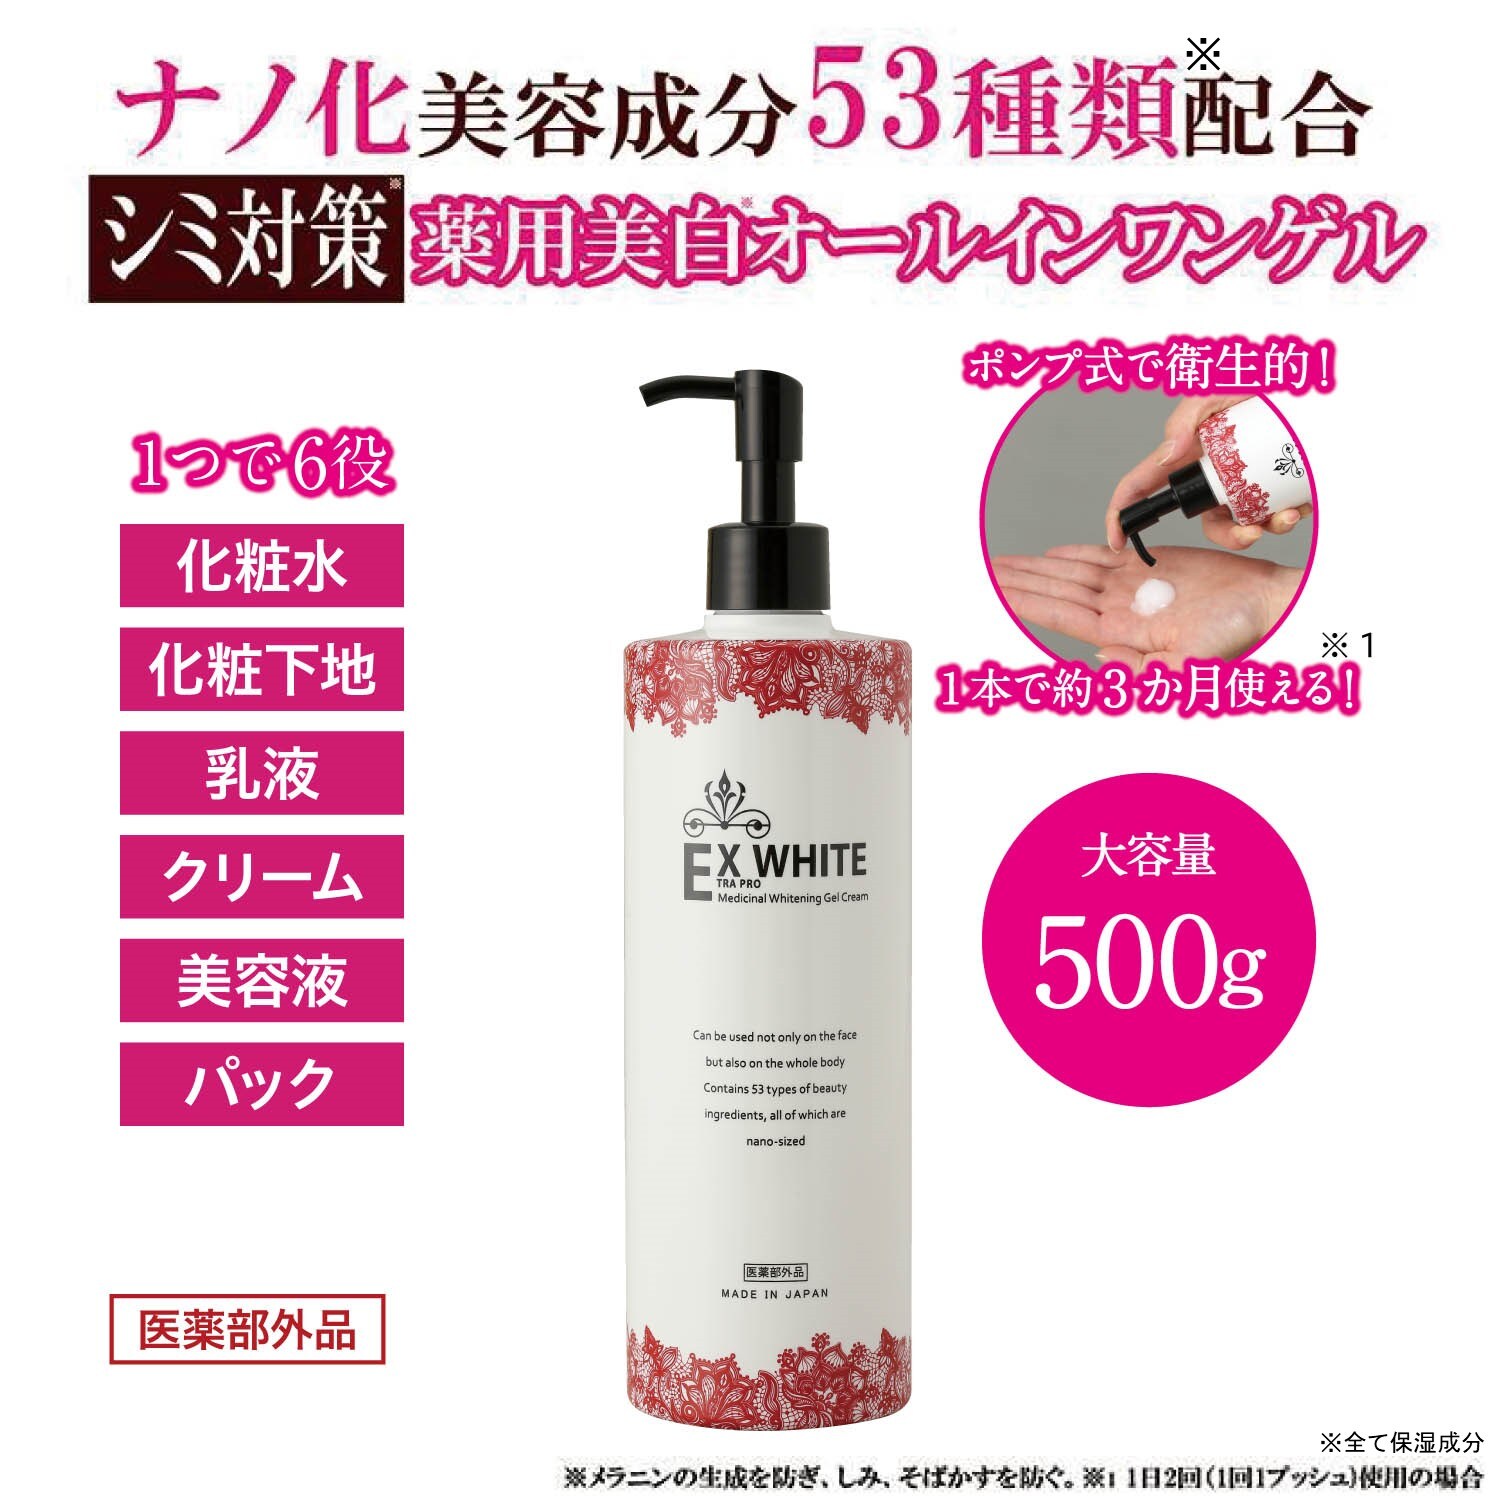 【ベルメゾン】EXWHITE薬用美白オールインワンゲル 500g